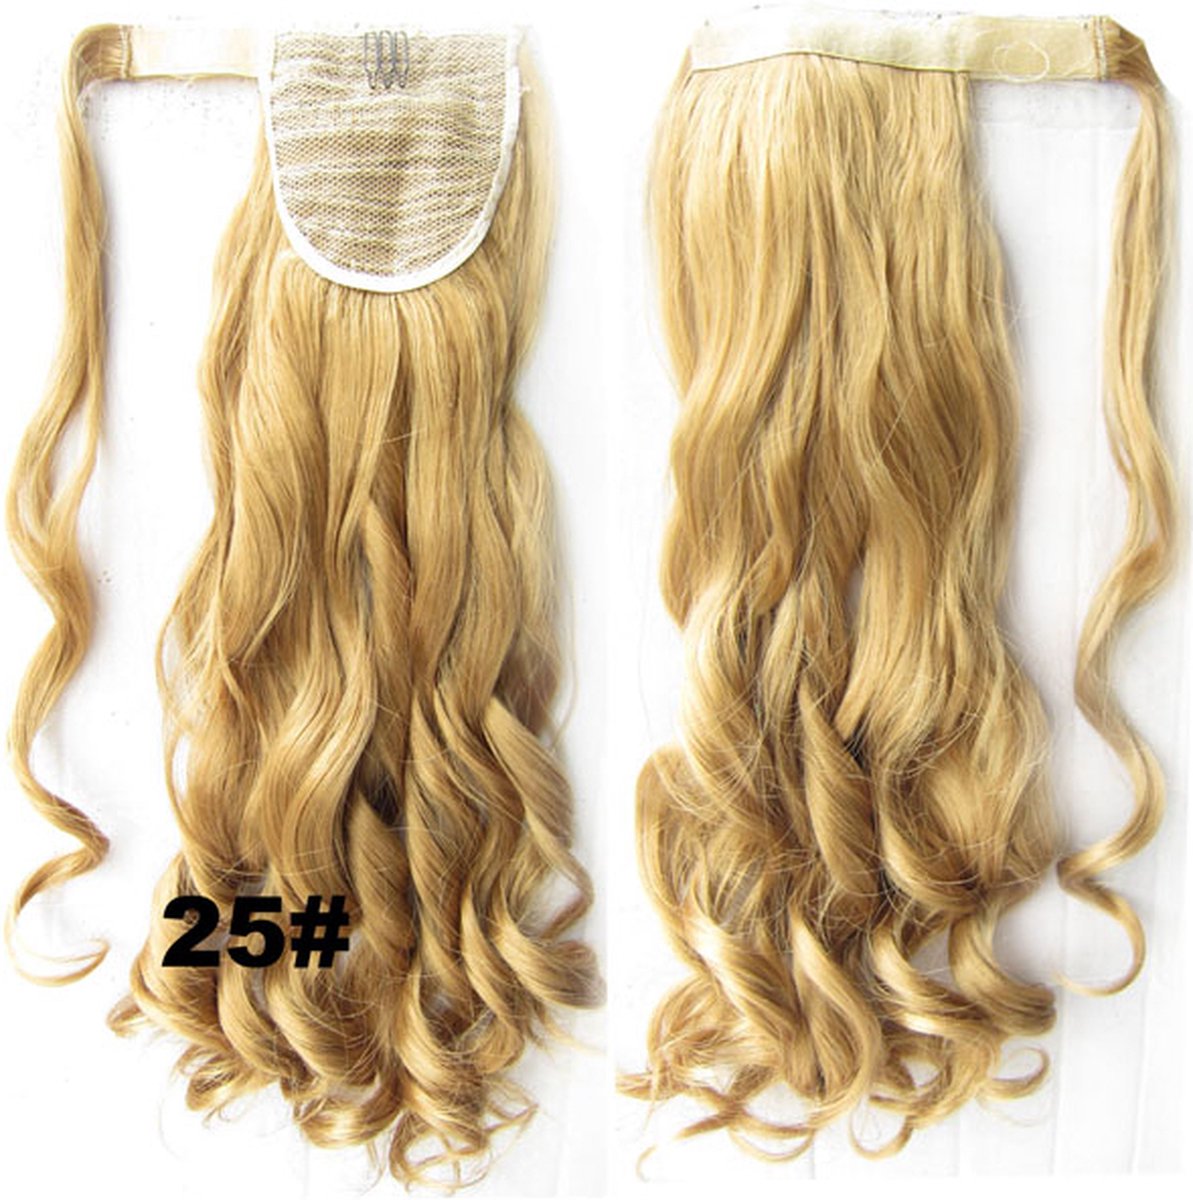 Wrap Around paardenstaart, ponytail hairextensions wavy blond - 25#